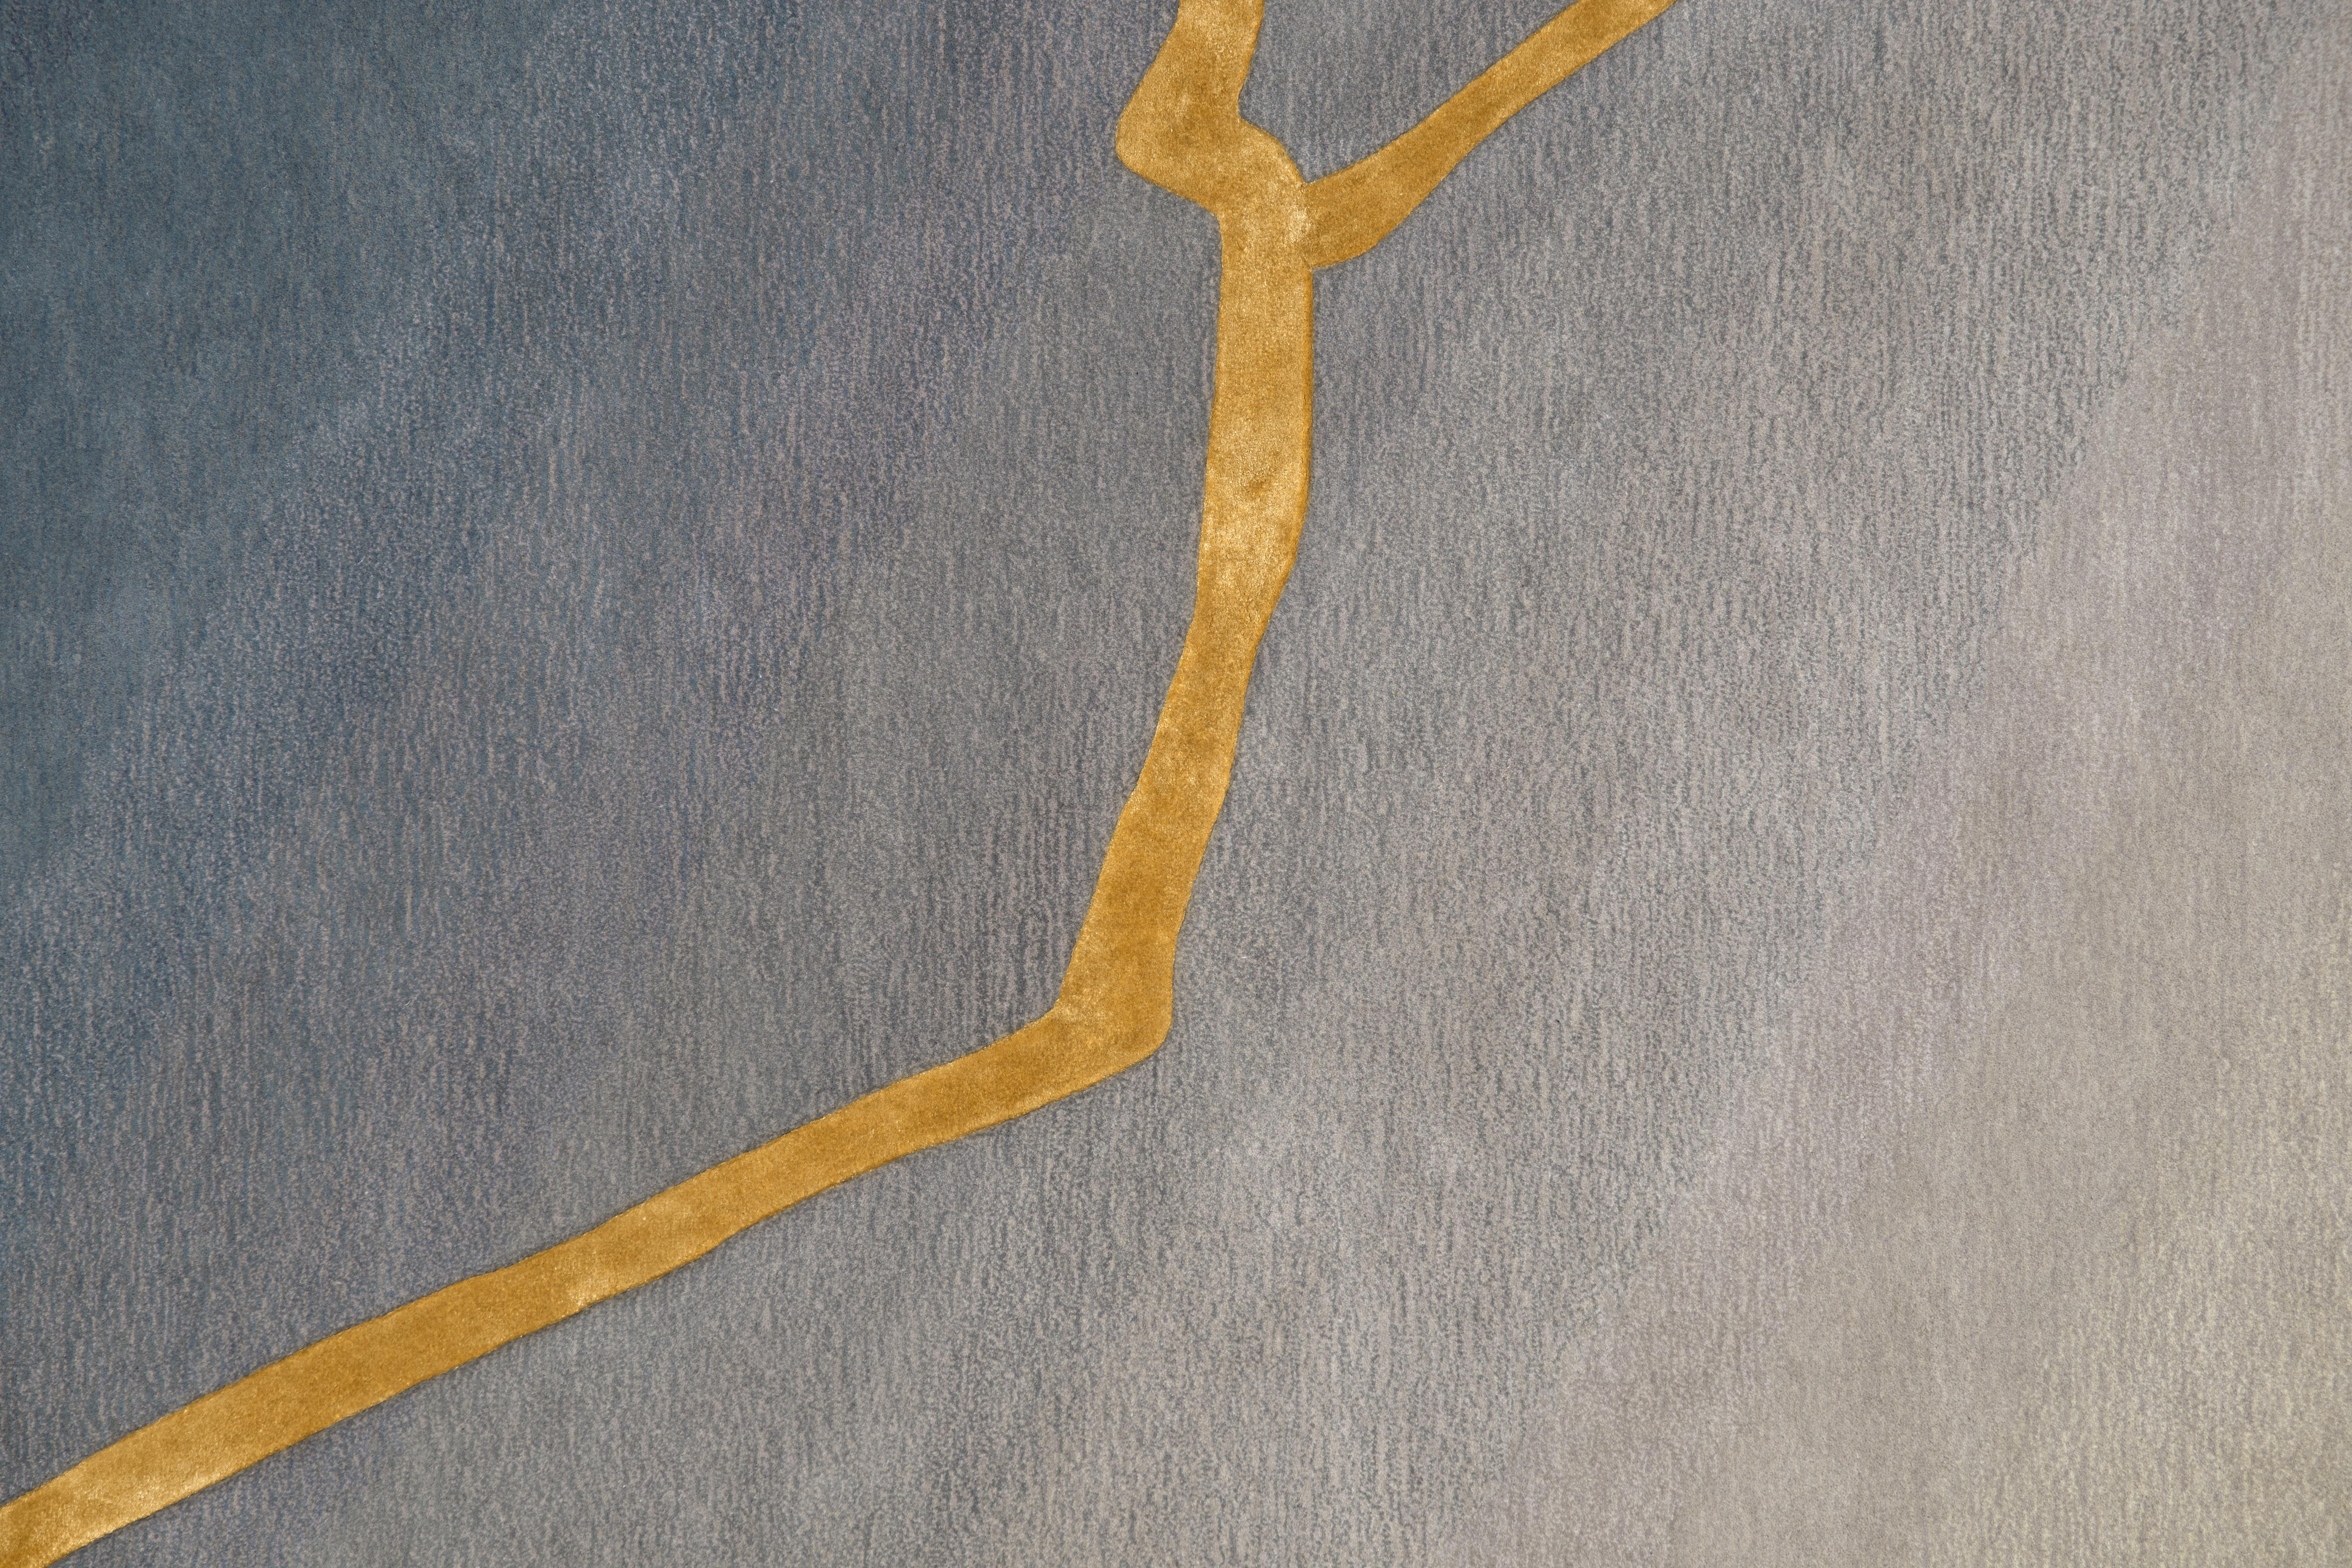 Der hier gezeigte handgetuftete Teppich K-3 weist einen raffinierten Verlauf von Grautönen auf, der nahtlos von tiefem Anthrazit zu einem weichen, silbernen Ton übergeht. Die Handwerkskunst wird durch ein verziertes goldenes, von Kintsugi